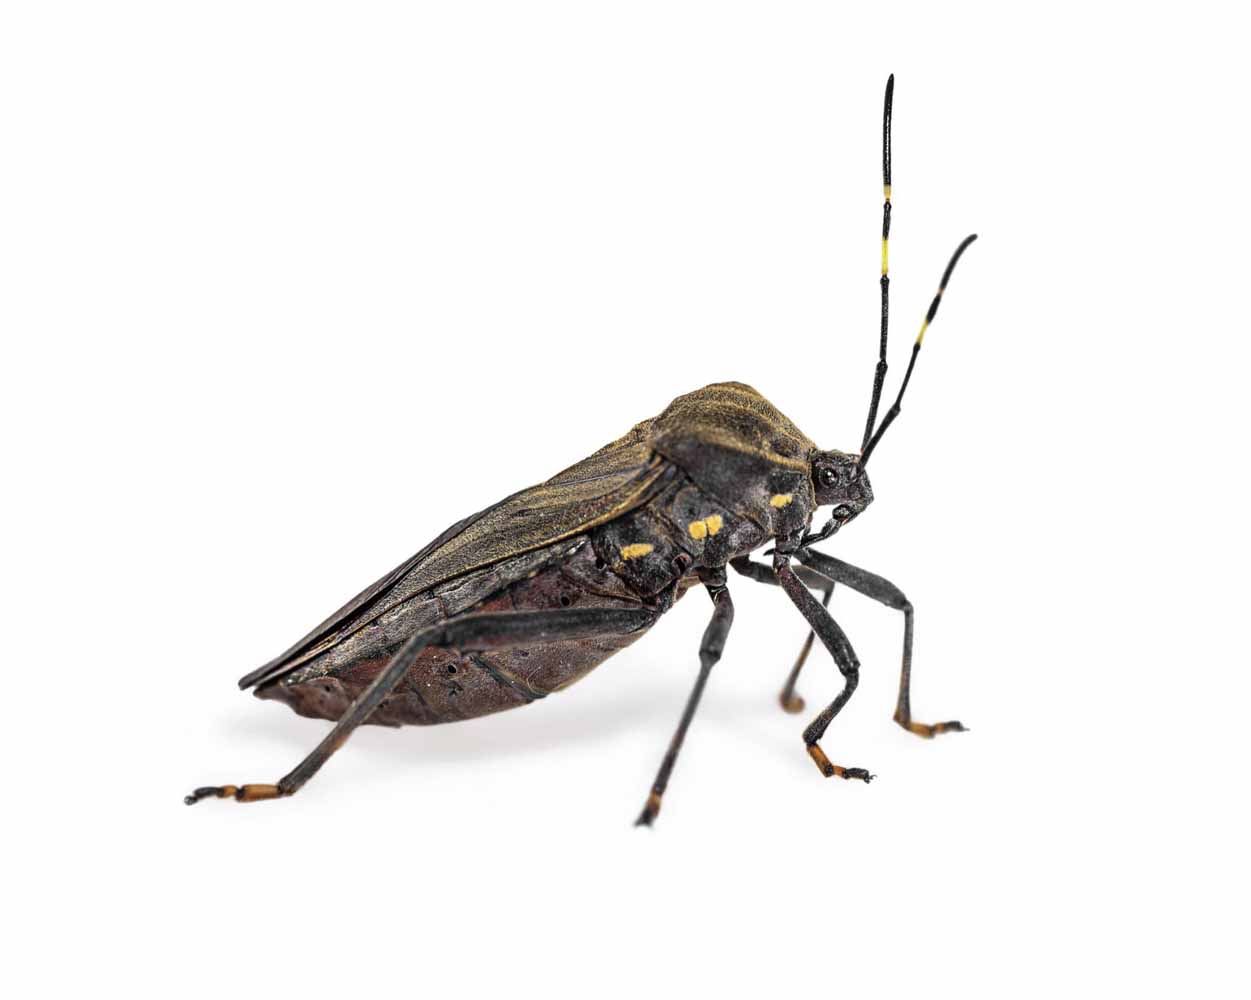 Closeup of a kissing bug